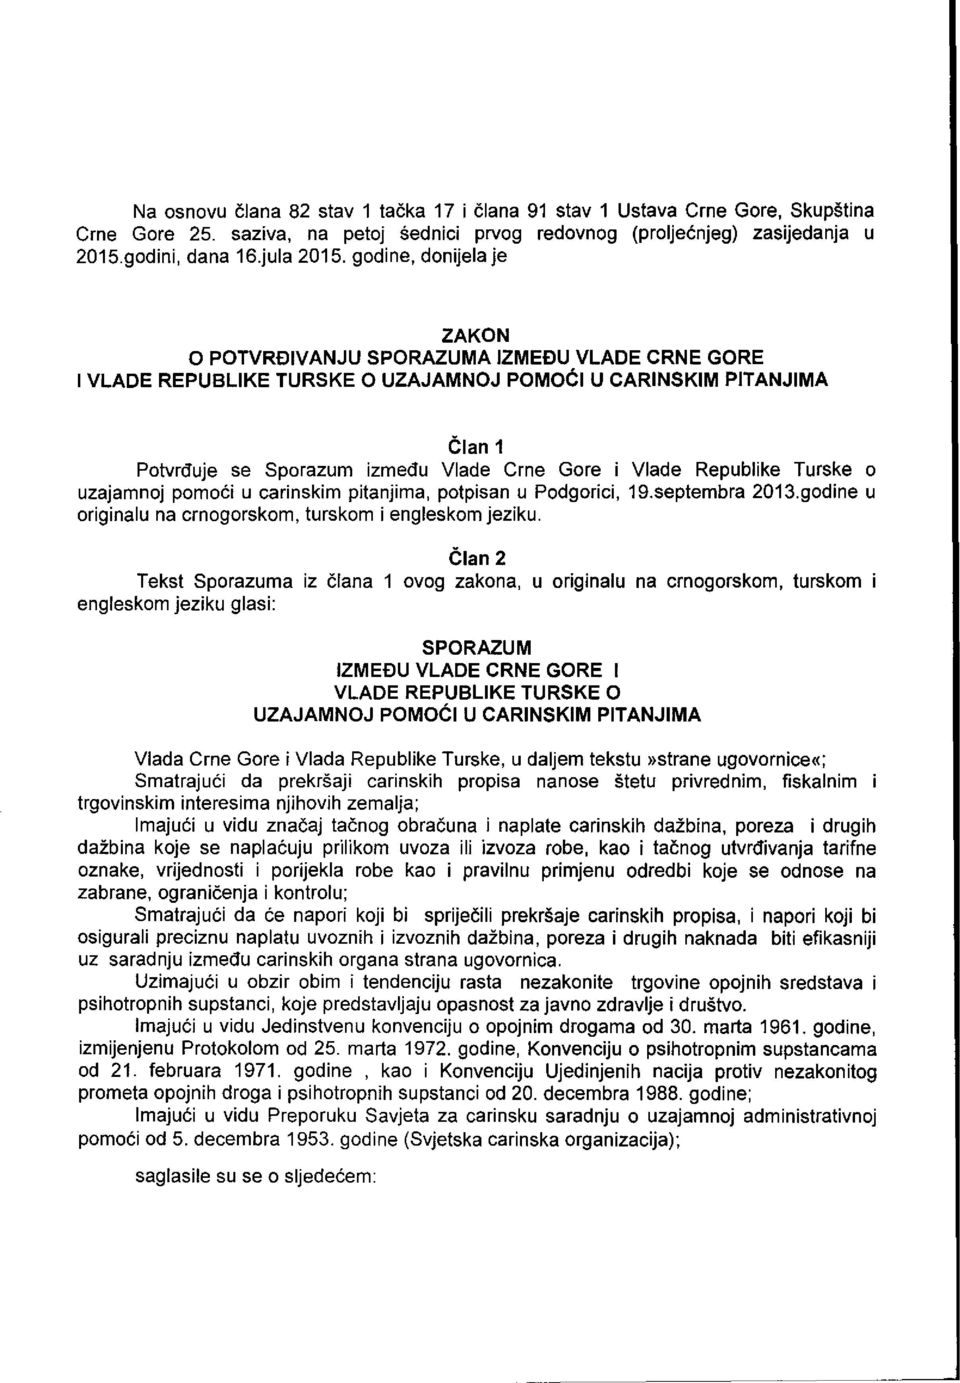 Republike Turske o uzajamnoj pomodi u carinskim pitanjima, potpisan u Podgorici, 19.septembra 2013.godine u originalu na crnogorskom, turskom i engleskom jeziku.